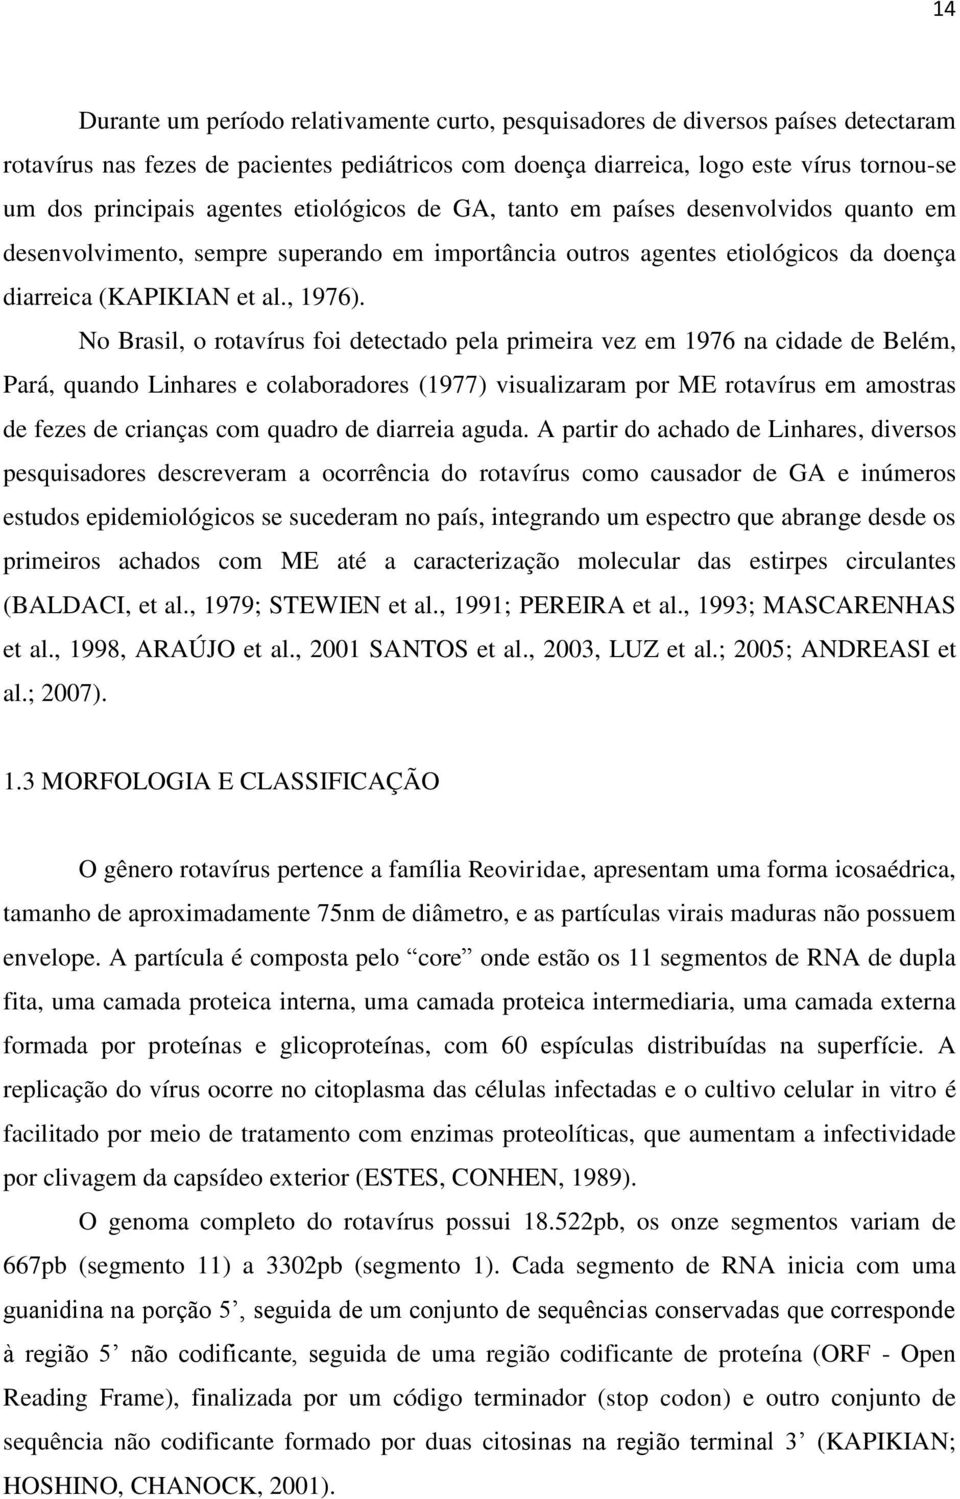 No Brasil, o rotavírus foi detectado pela primeira vez em 1976 na cidade de Belém, Pará, quando Linhares e colaboradores (1977) visualizaram por ME rotavírus em amostras de fezes de crianças com